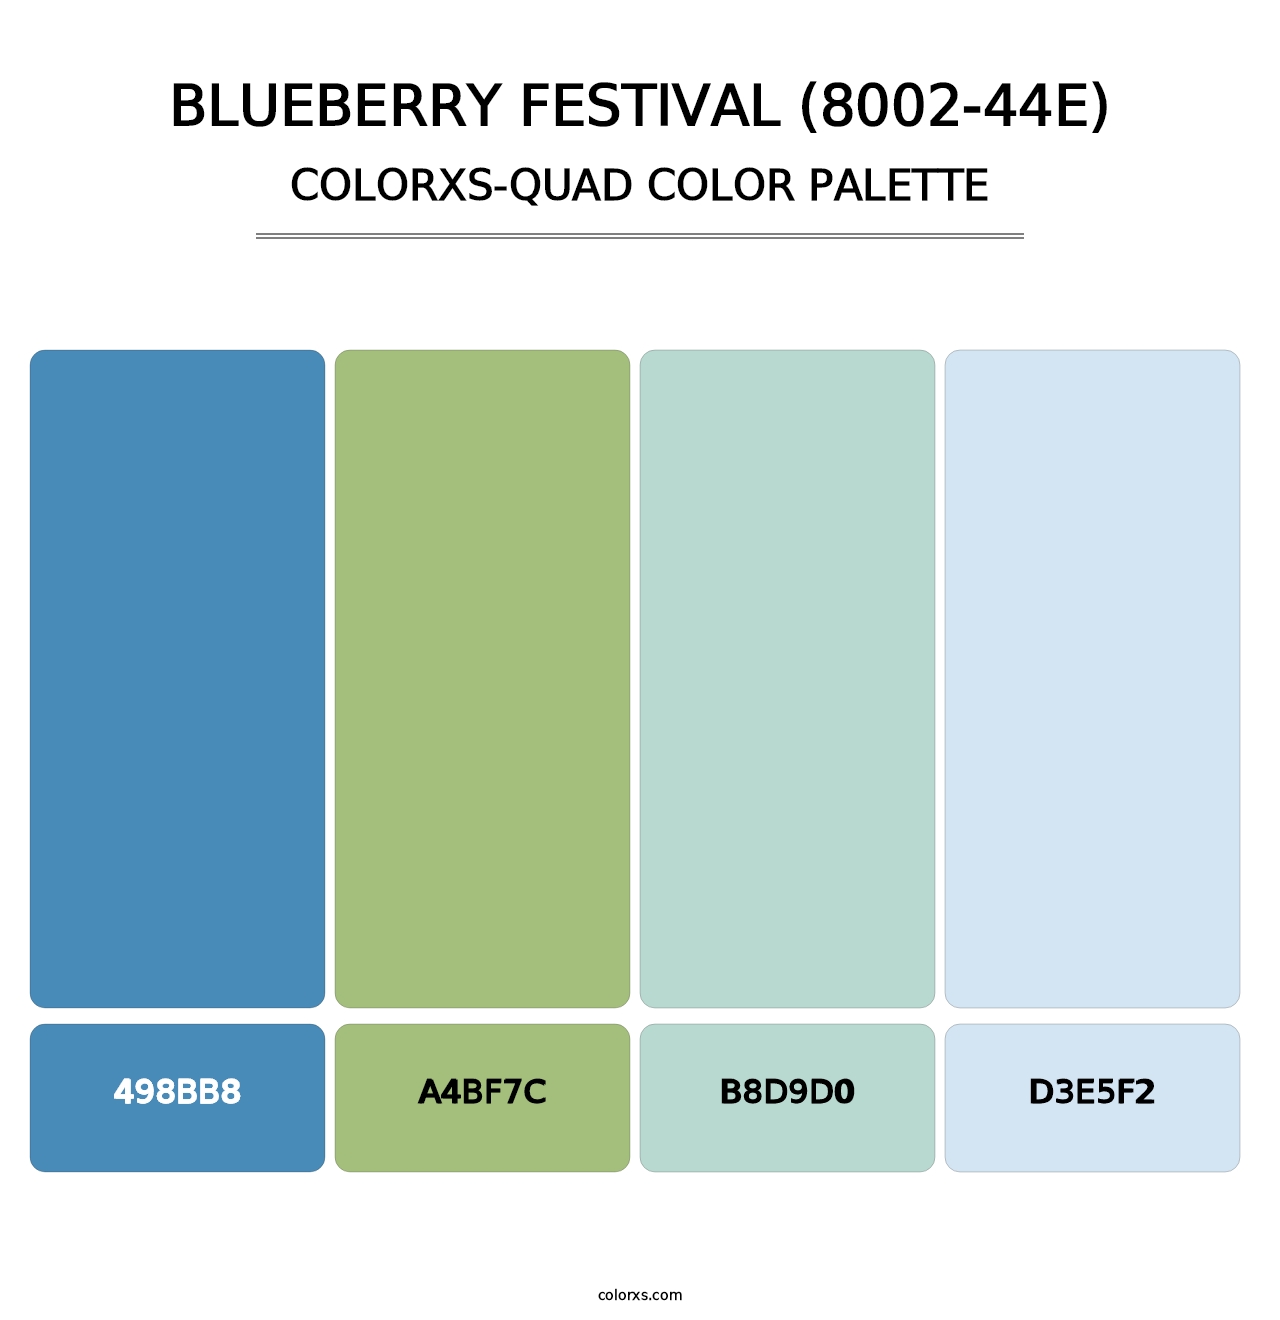 Blueberry Festival (8002-44E) - Colorxs Quad Palette